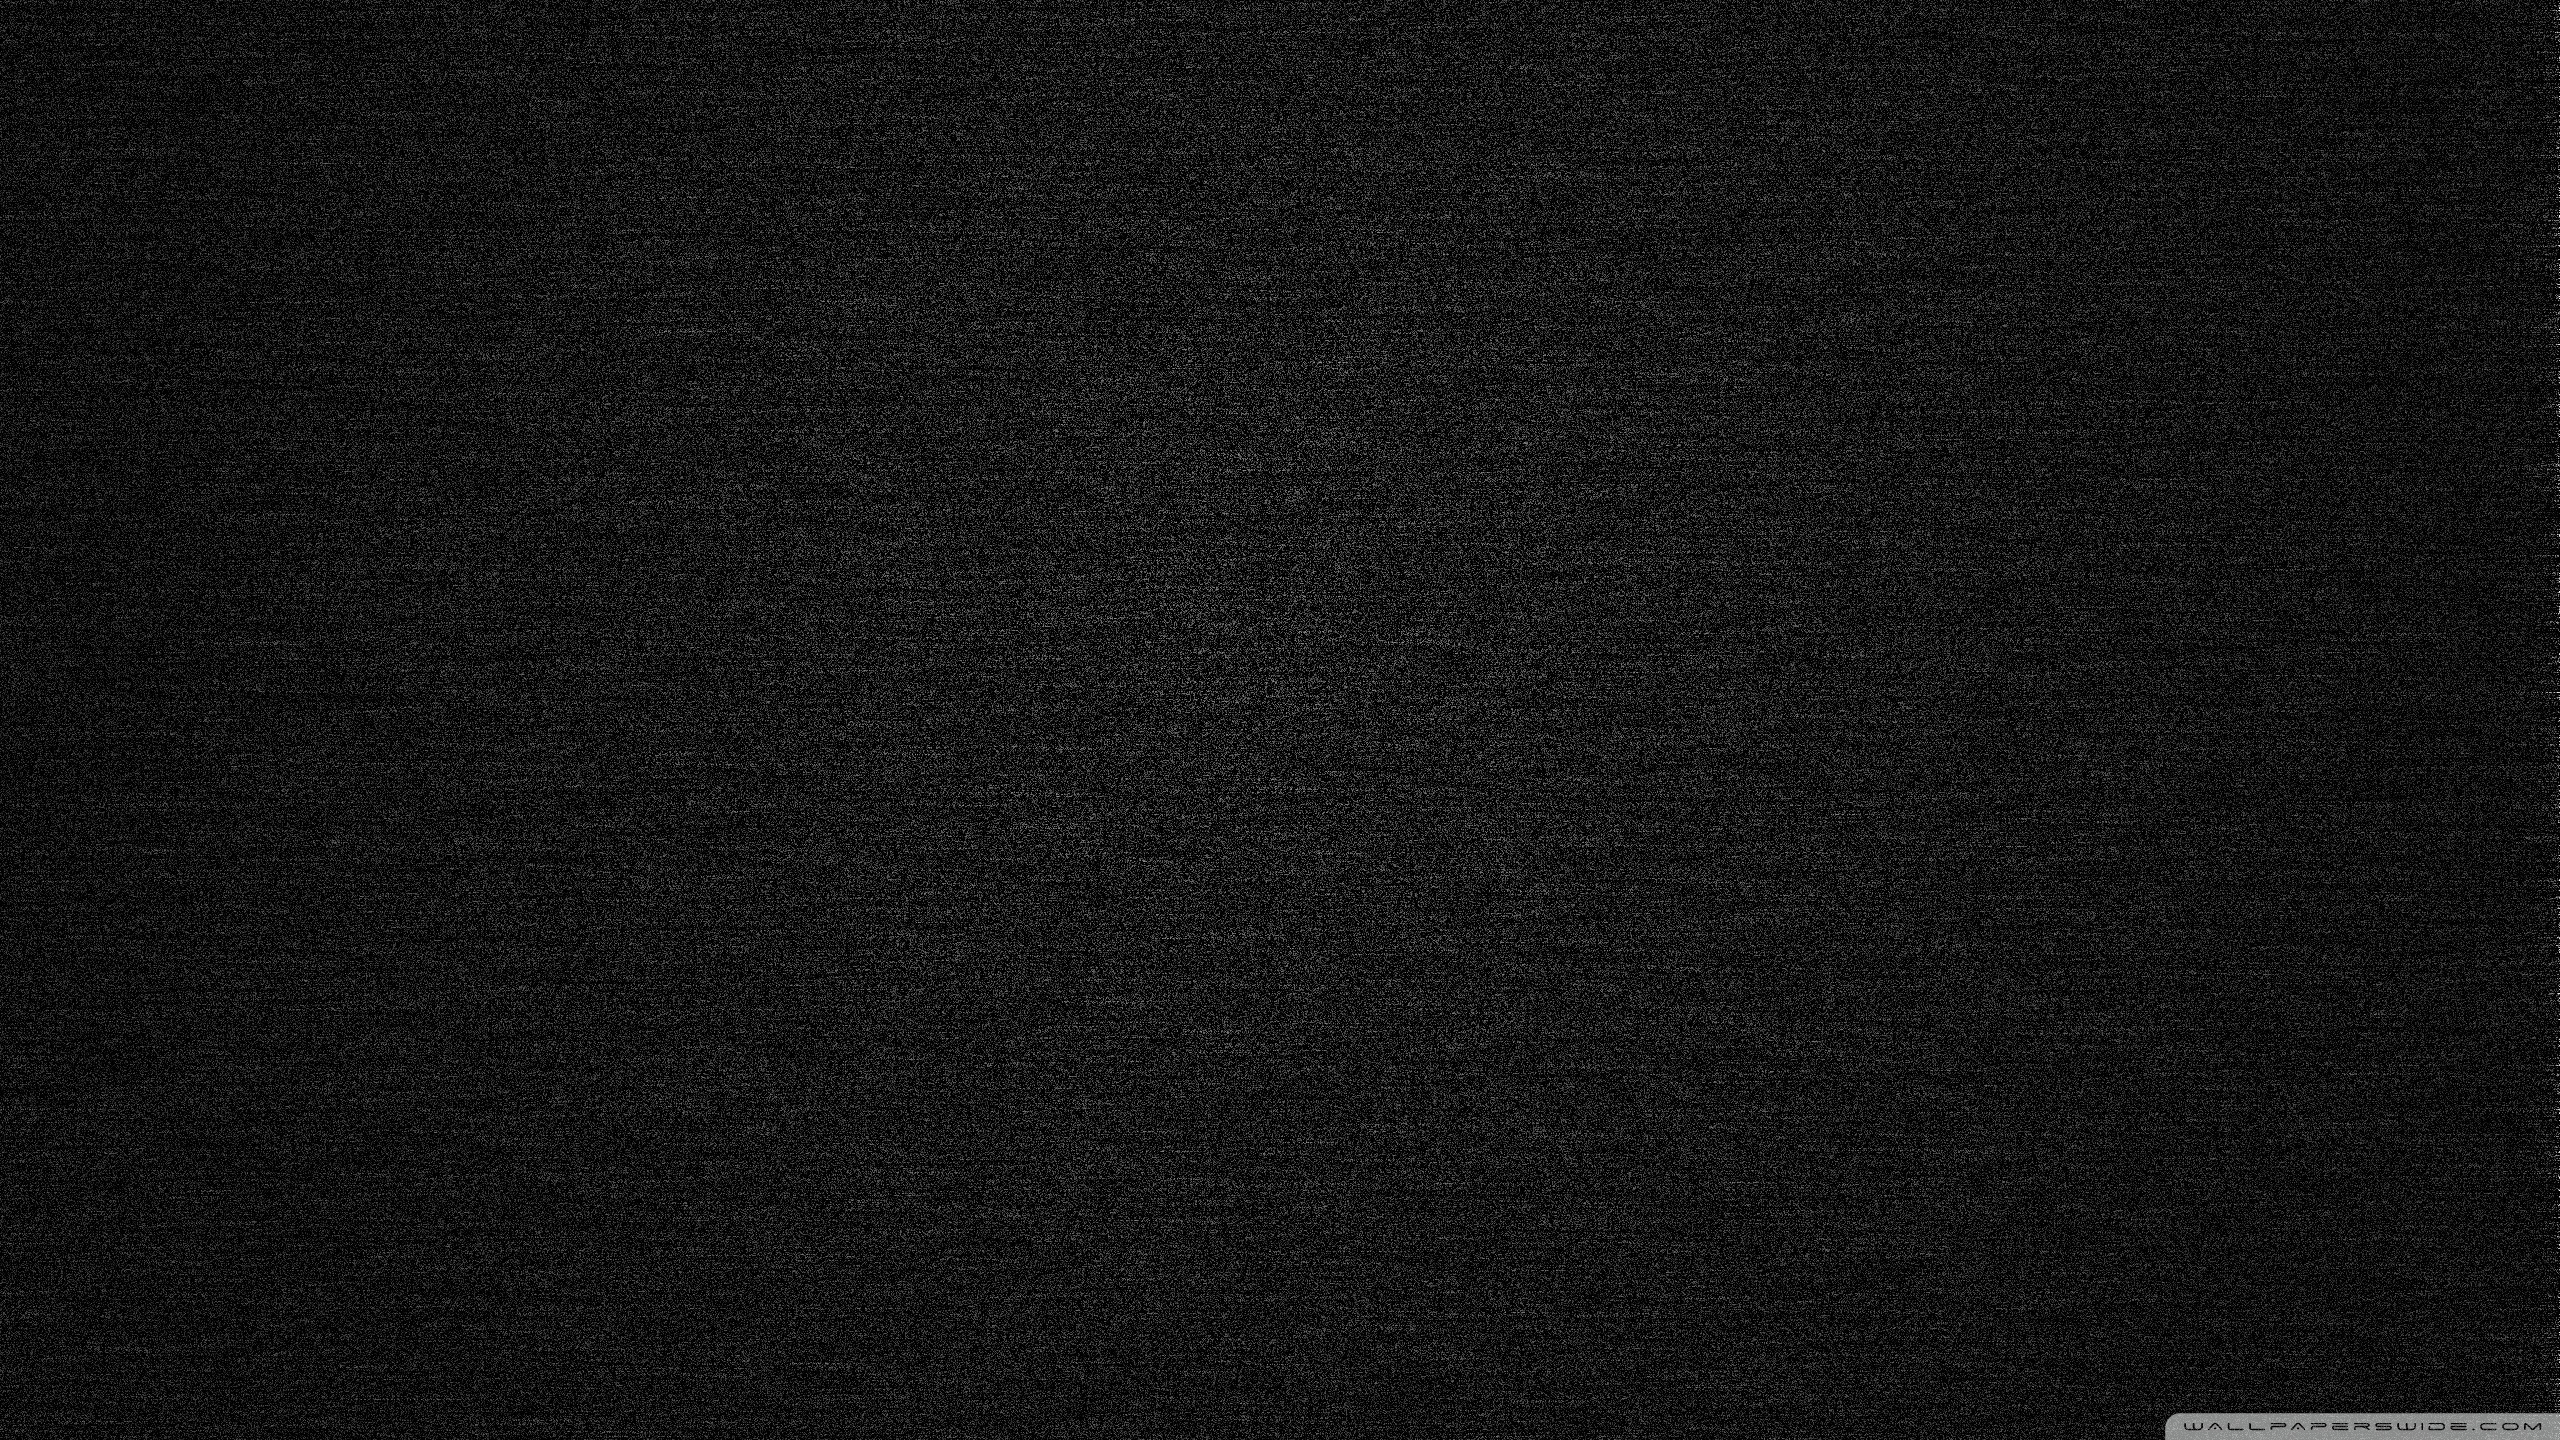 Black Noise Wallpaper sẽ mang đến cho bạn sự thuần khiết, độc đáo và hoàn hảo cho không gian sống. Xem hình ảnh để cảm nhận sự tuyệt vời của nó.